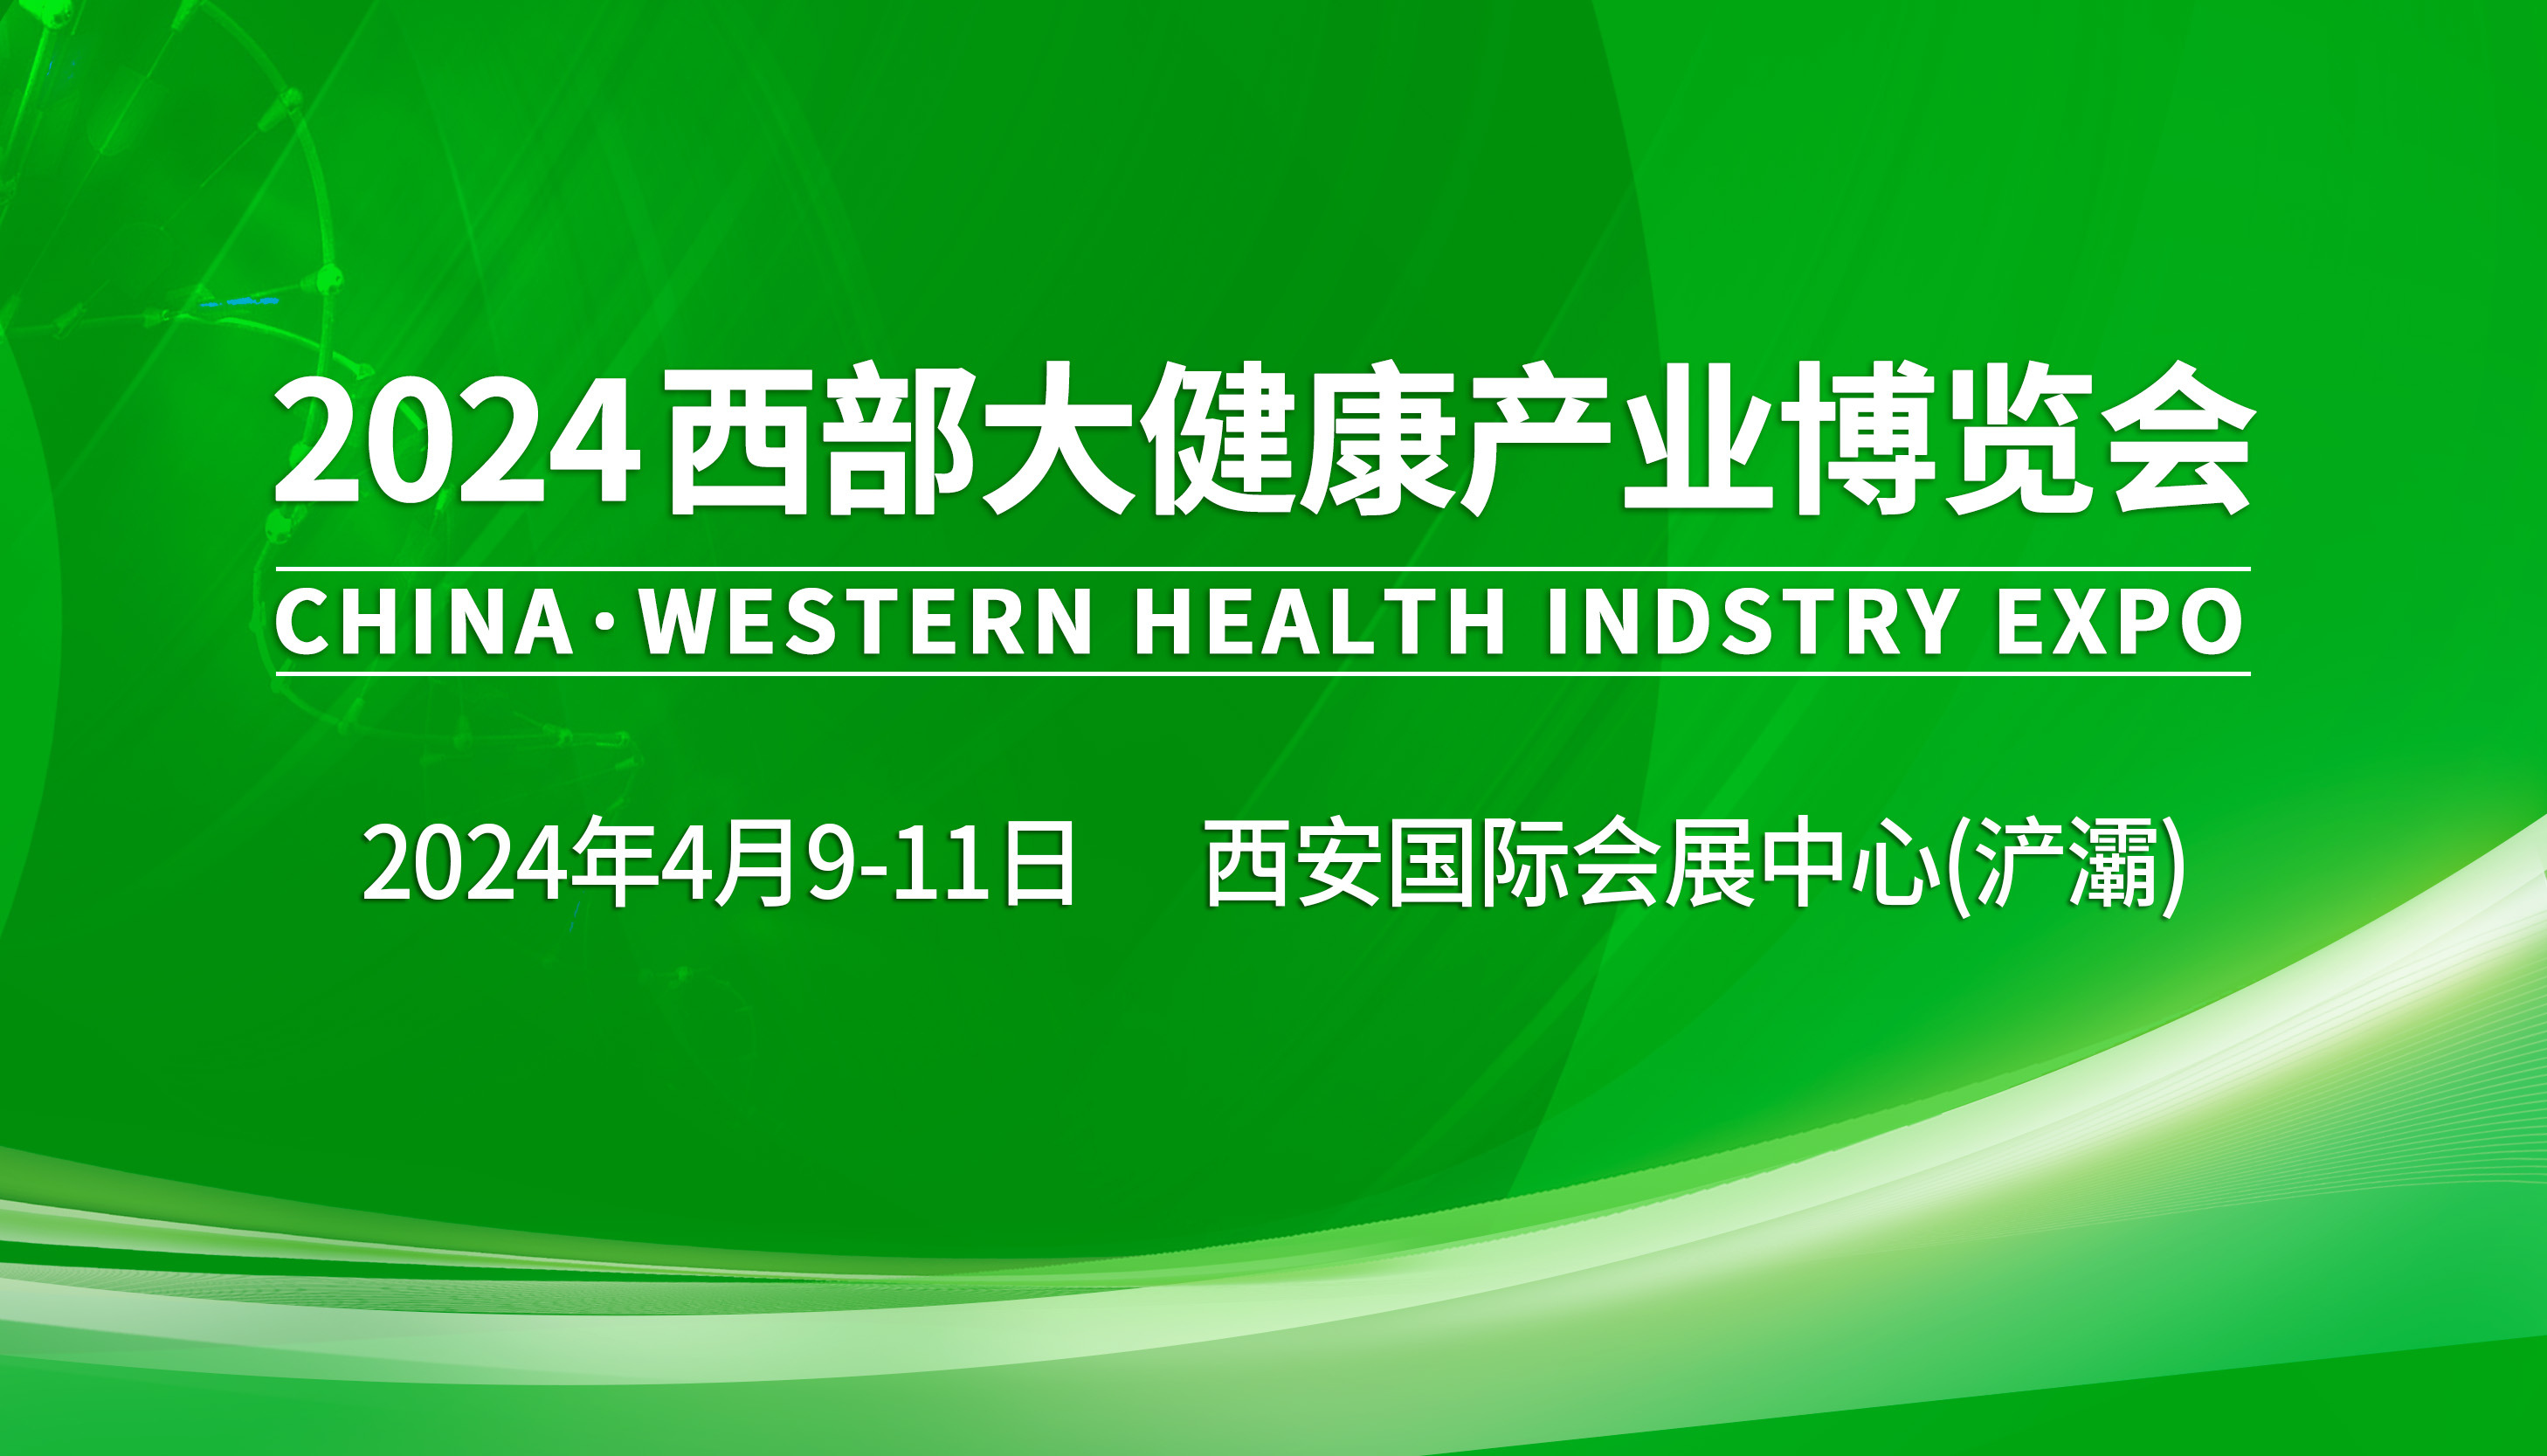 头条：4月9-11日、2024西部大健康产业博览会将在西安国际会展中心(浐灞)盛大举办